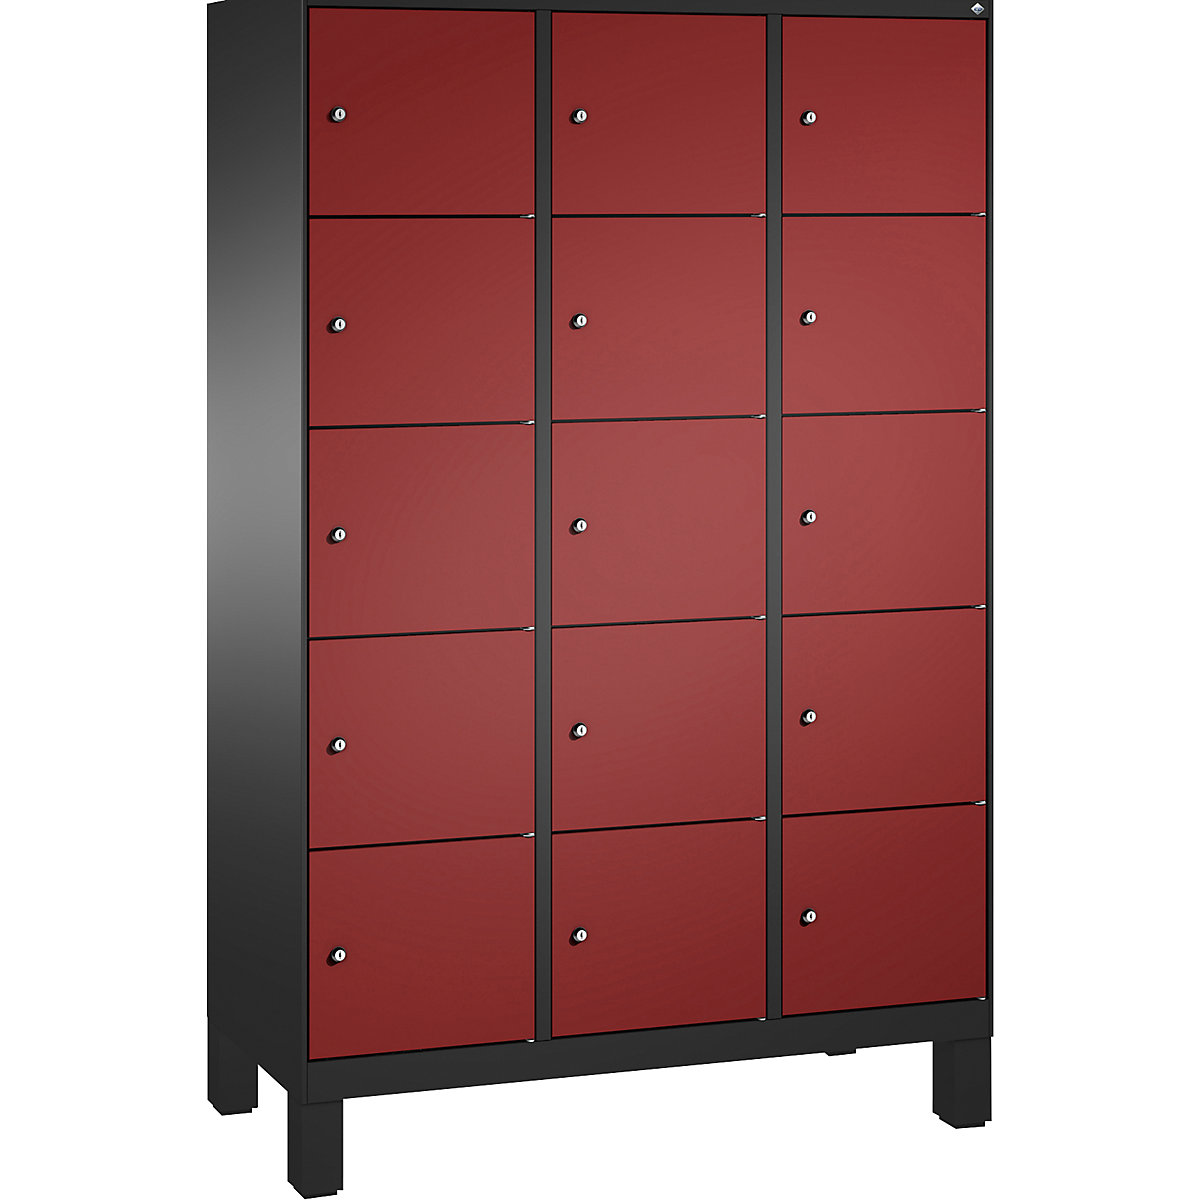 Armoire à casiers sur pieds EVOLO – C+P, 3 compartiments, 5 casiers chacun, largeur compartiments 400 mm, gris noir / rouge rubis-5